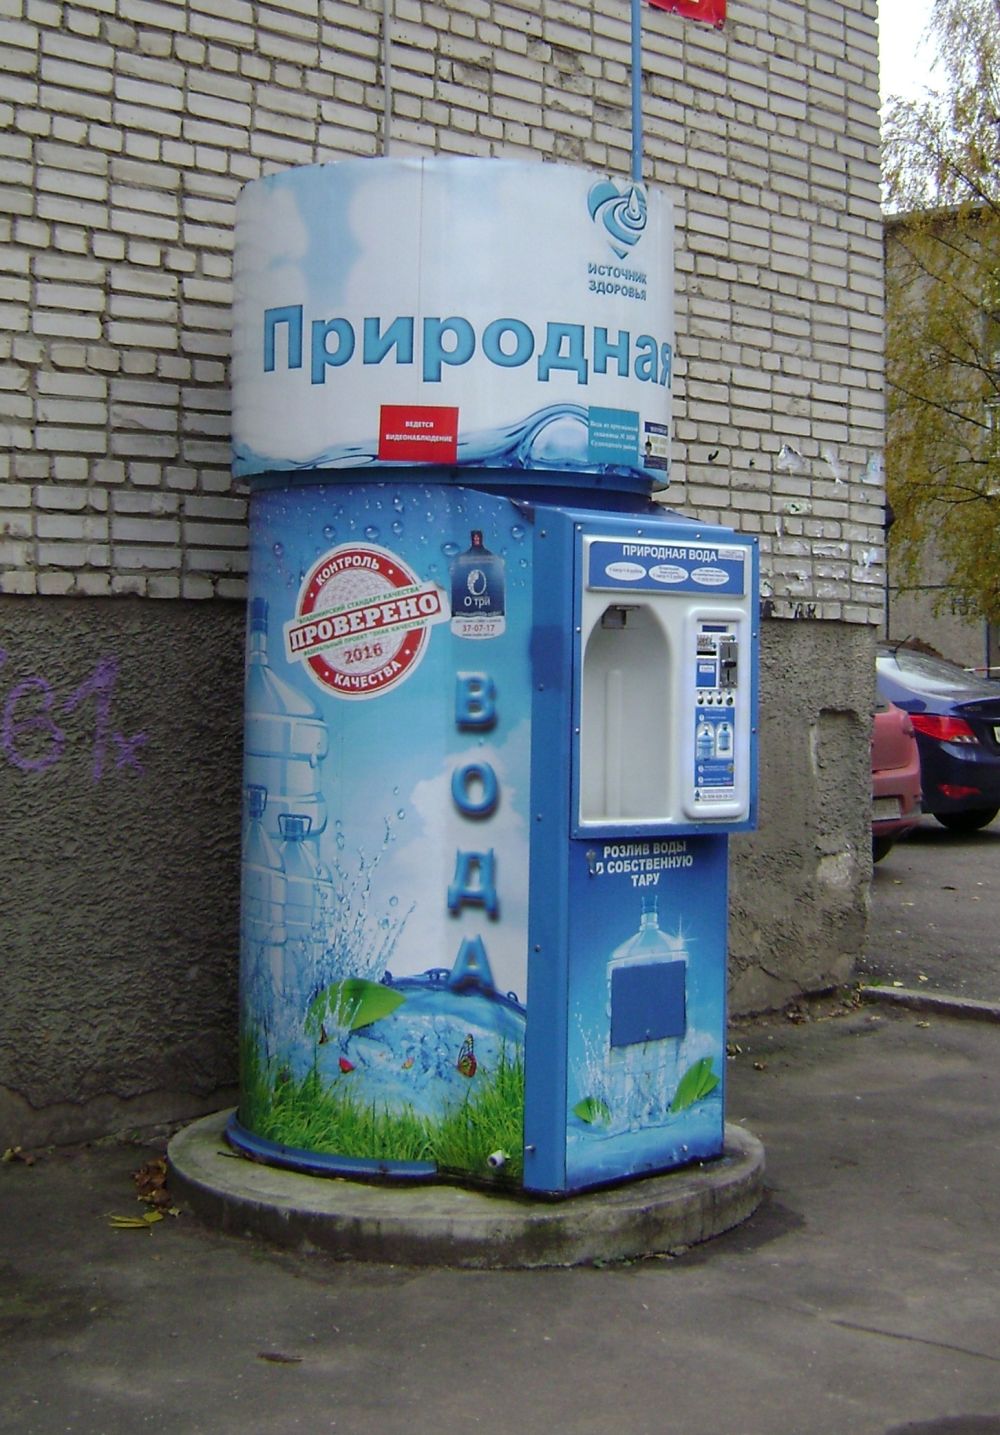 Продажа воды на улице в розлив. Автомат питьевой воды. Автомат с водой. Вендинговый автомат с водой. Уличный автомат с водой.